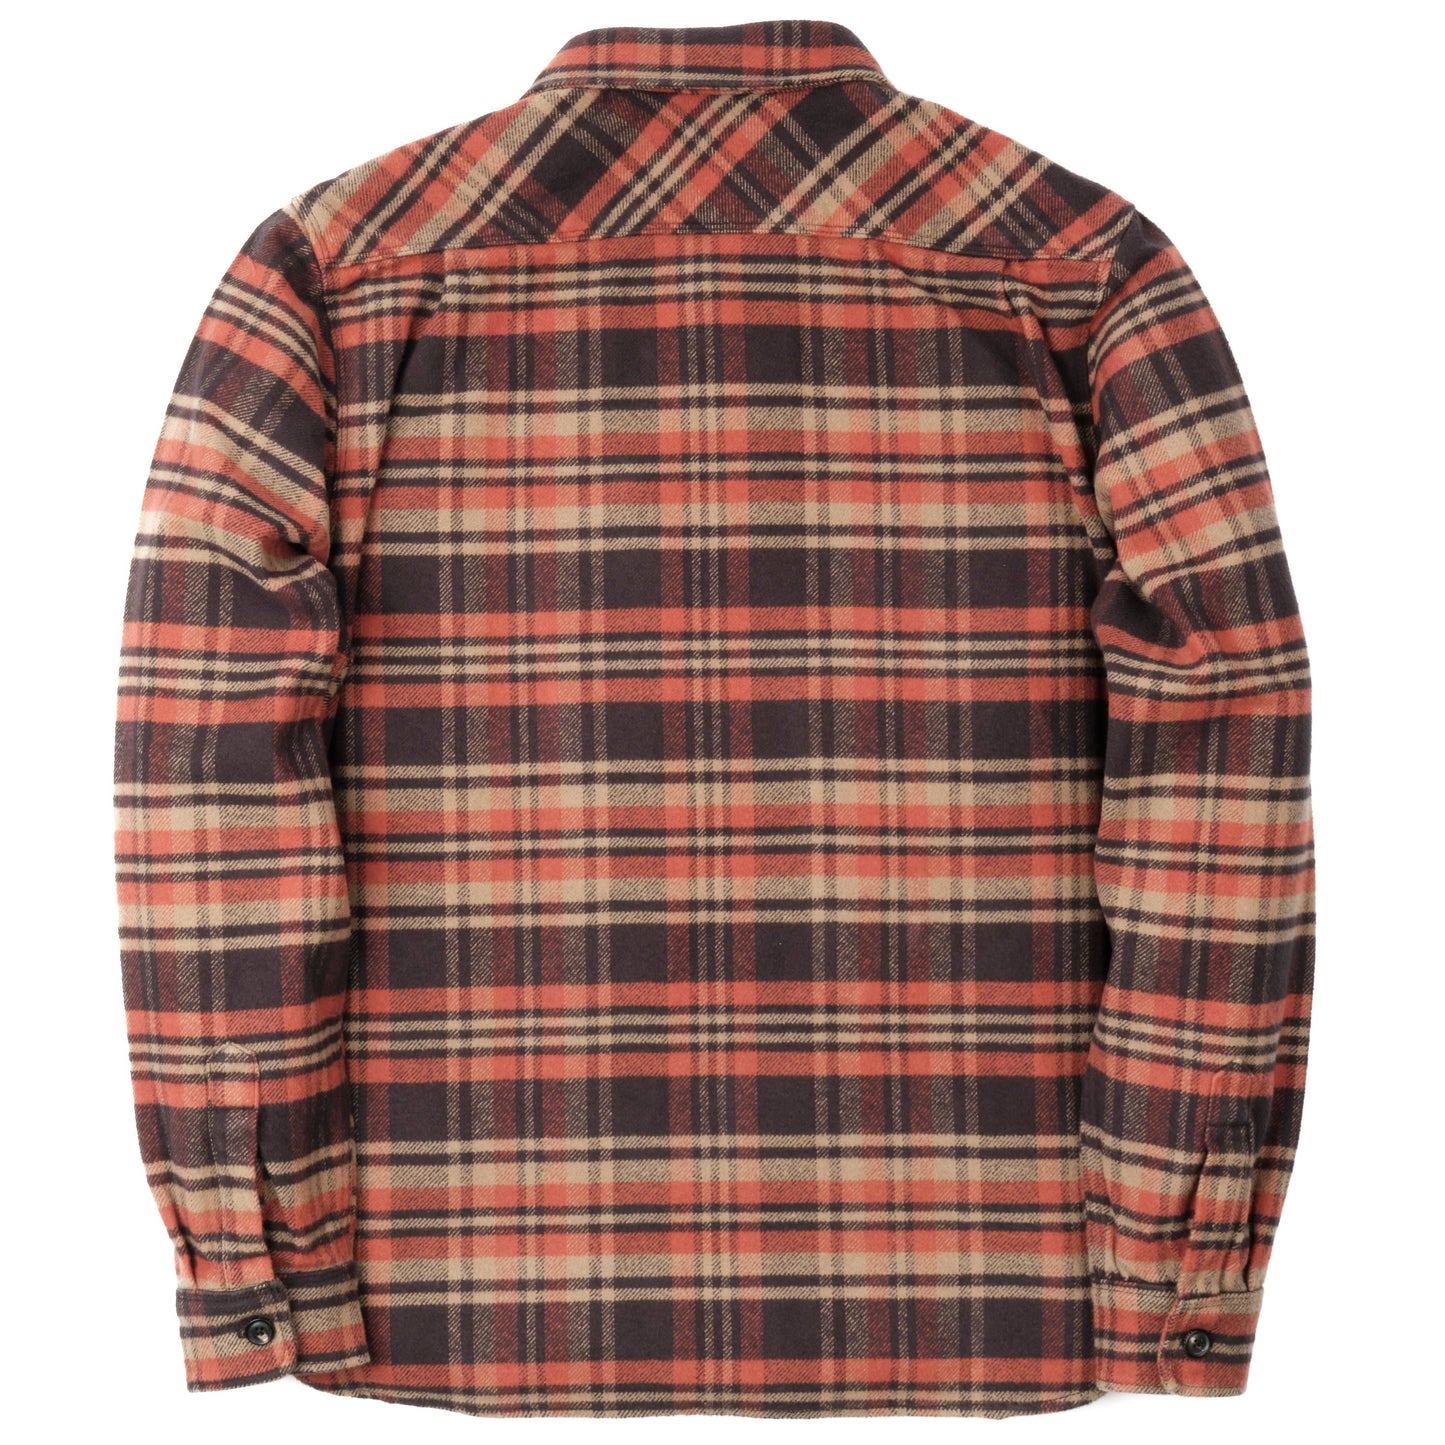 Freenote - Shirt - Benson Picante Flannel